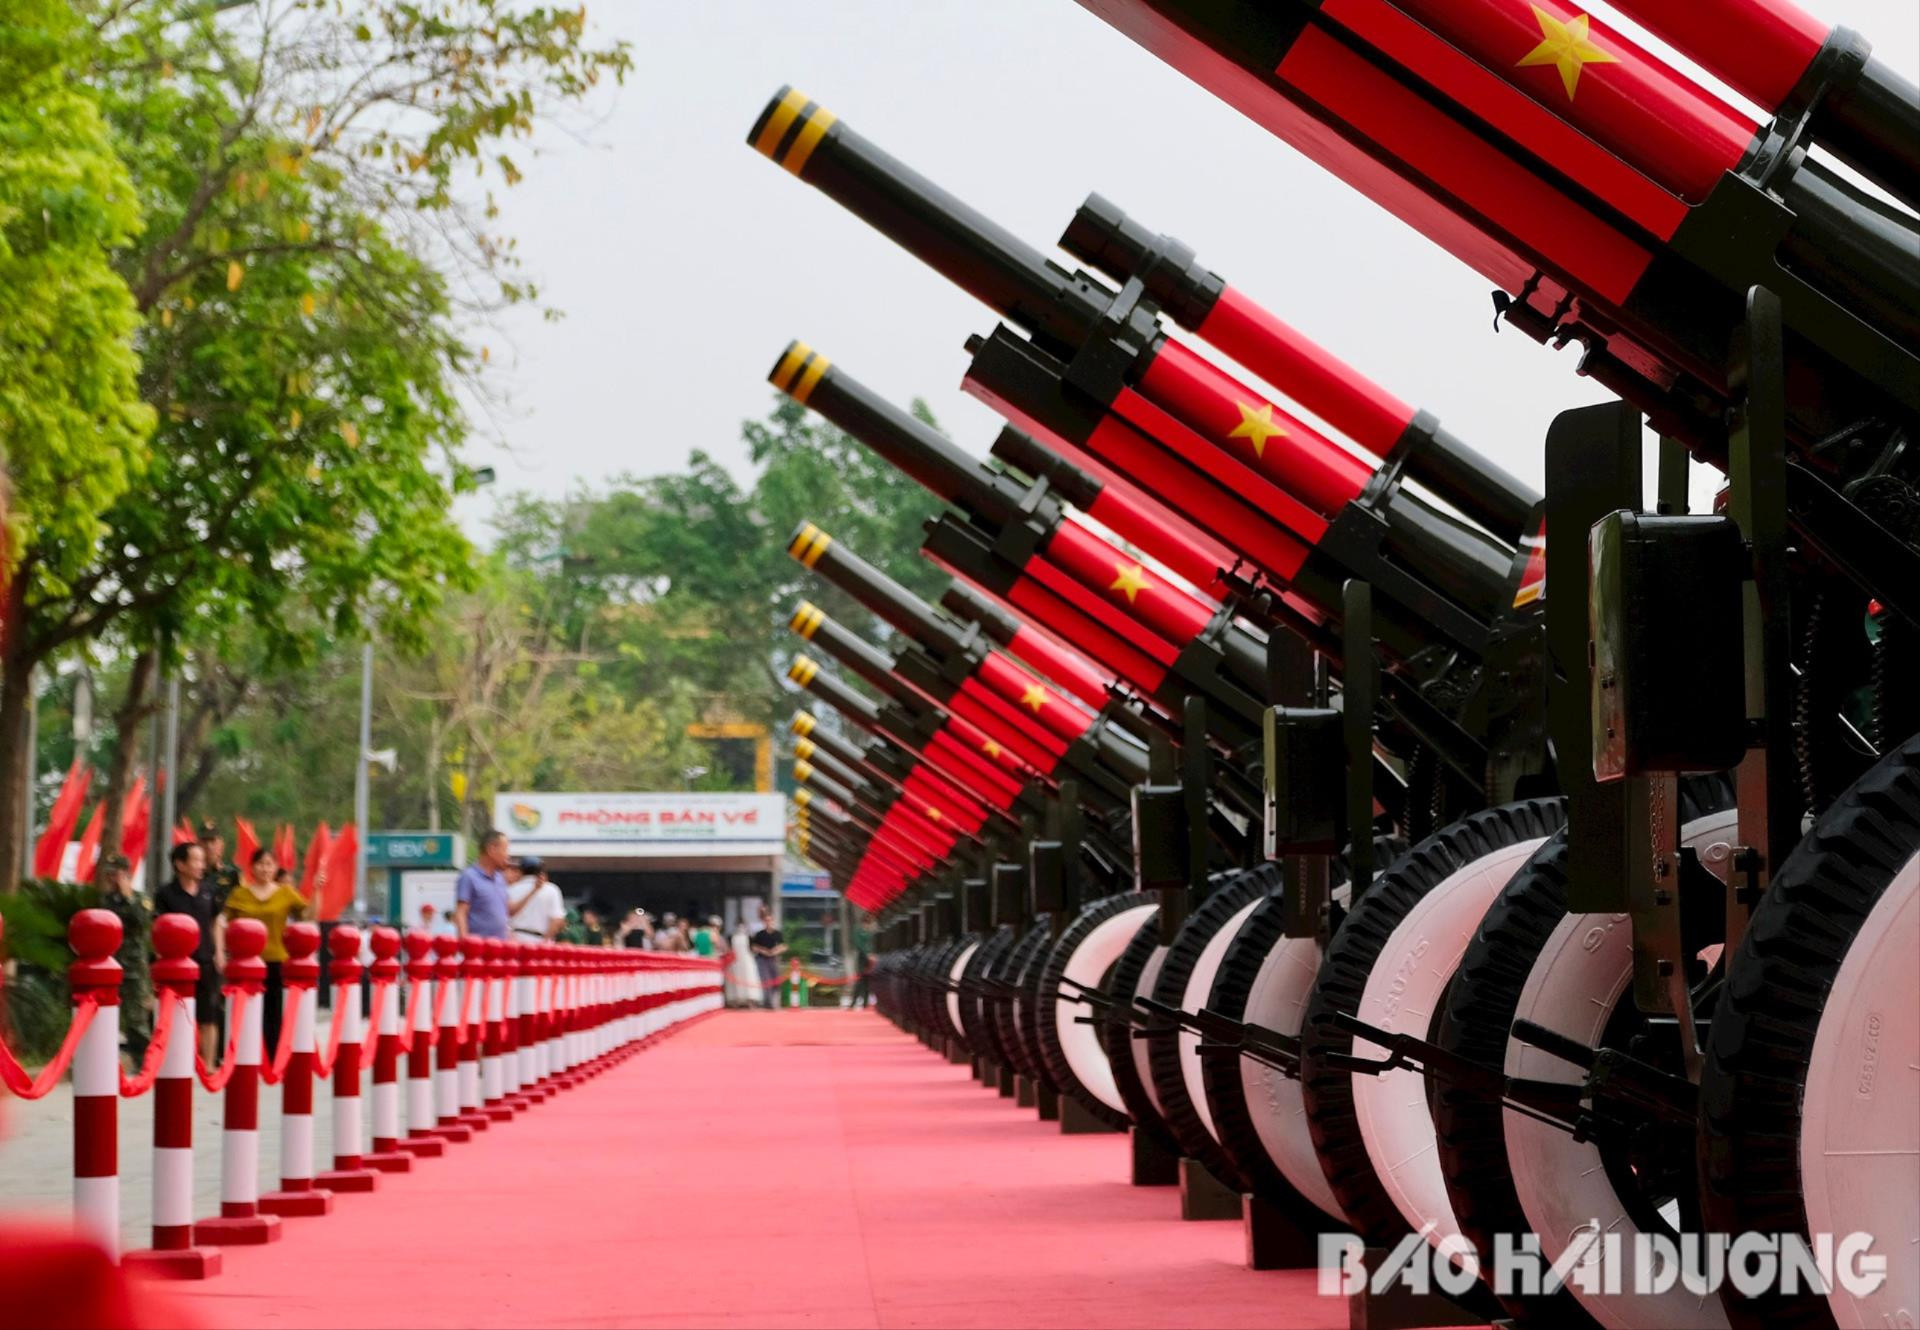 Nòng pháo được sơn Quốc kỳ Việt Nam trên nền xanh thẫm